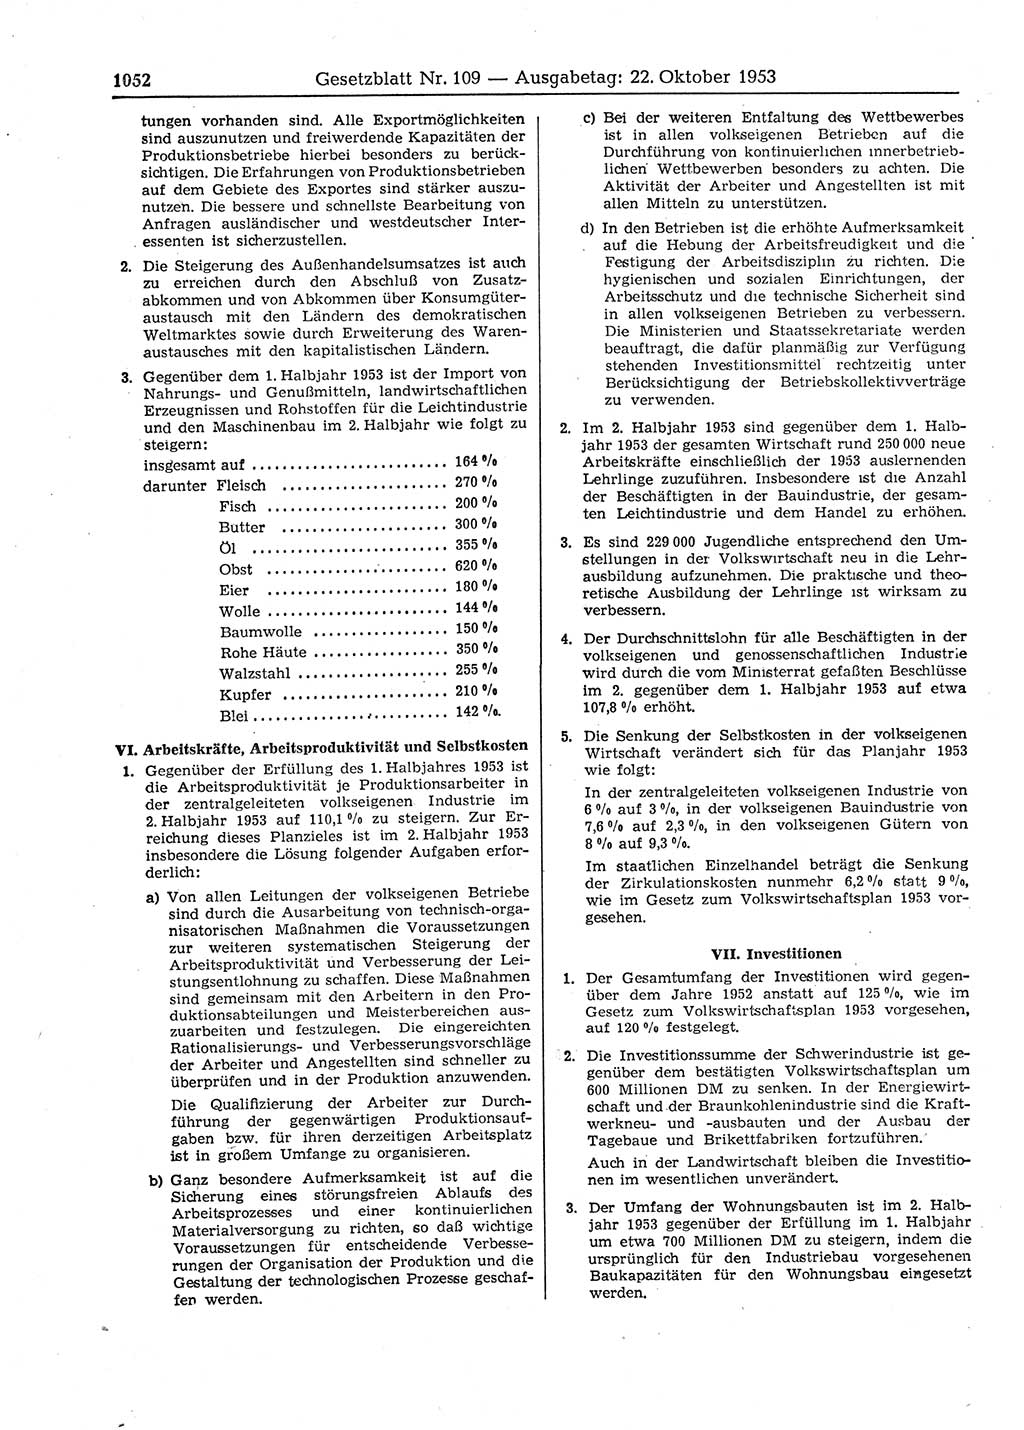 Gesetzblatt (GBl.) der Deutschen Demokratischen Republik (DDR) 1953, Seite 1052 (GBl. DDR 1953, S. 1052)